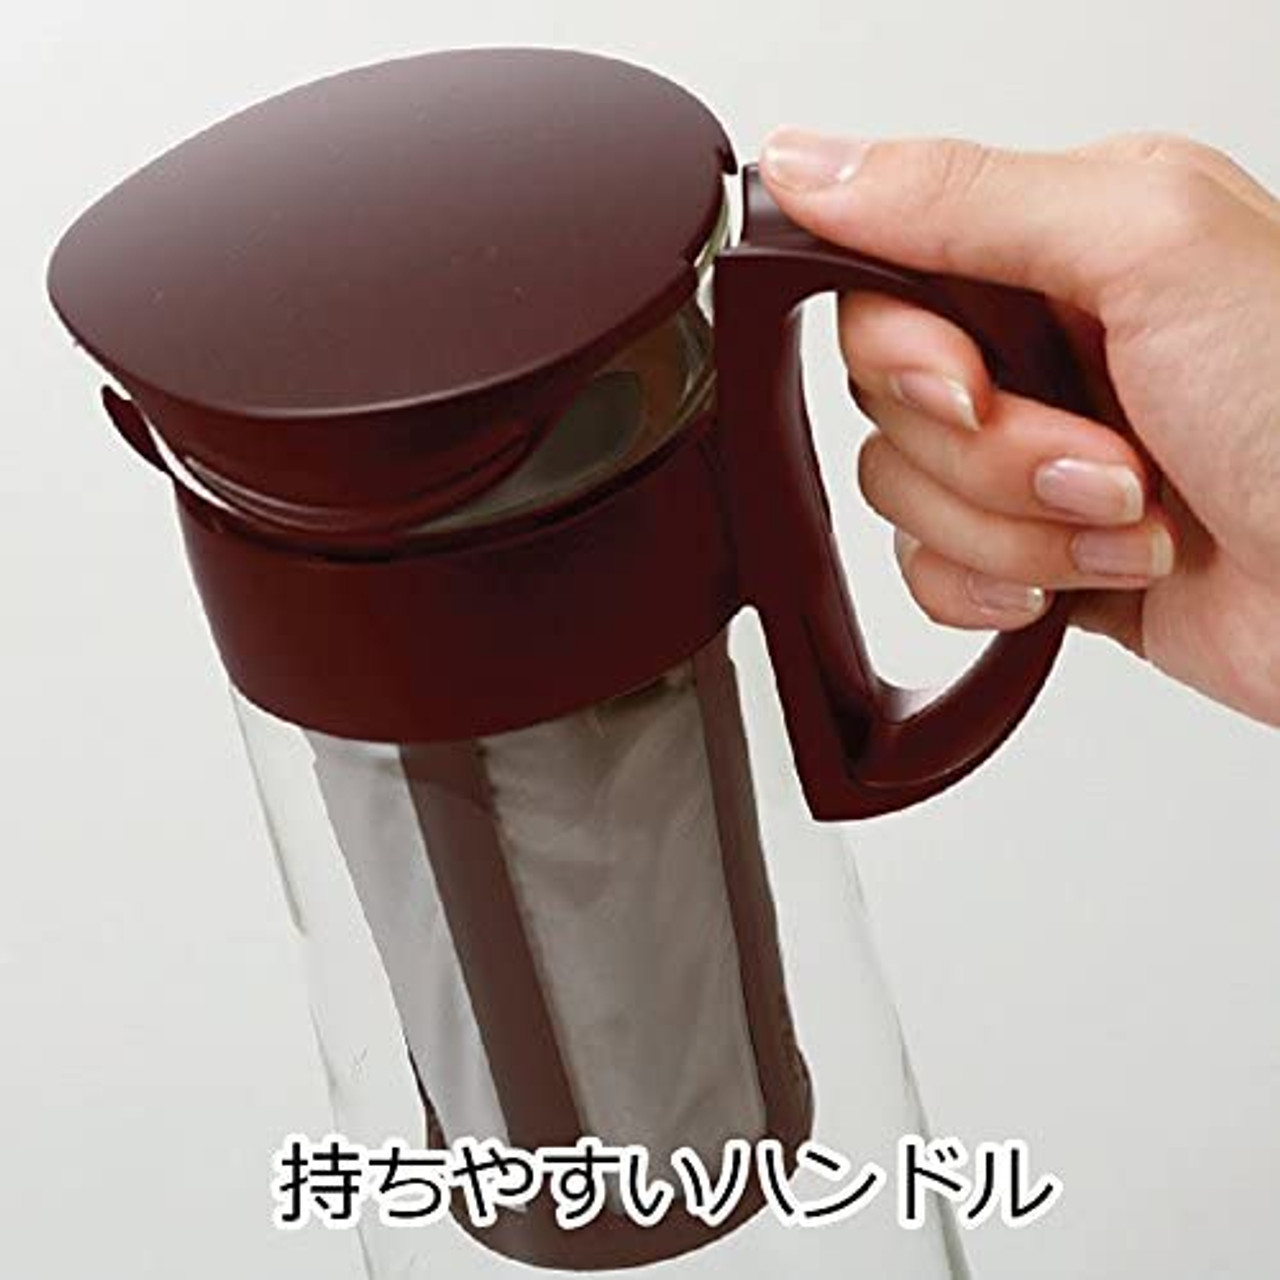 Hario Mizudashi Iced Tea or Coffee - Black The Hario Mizudashi